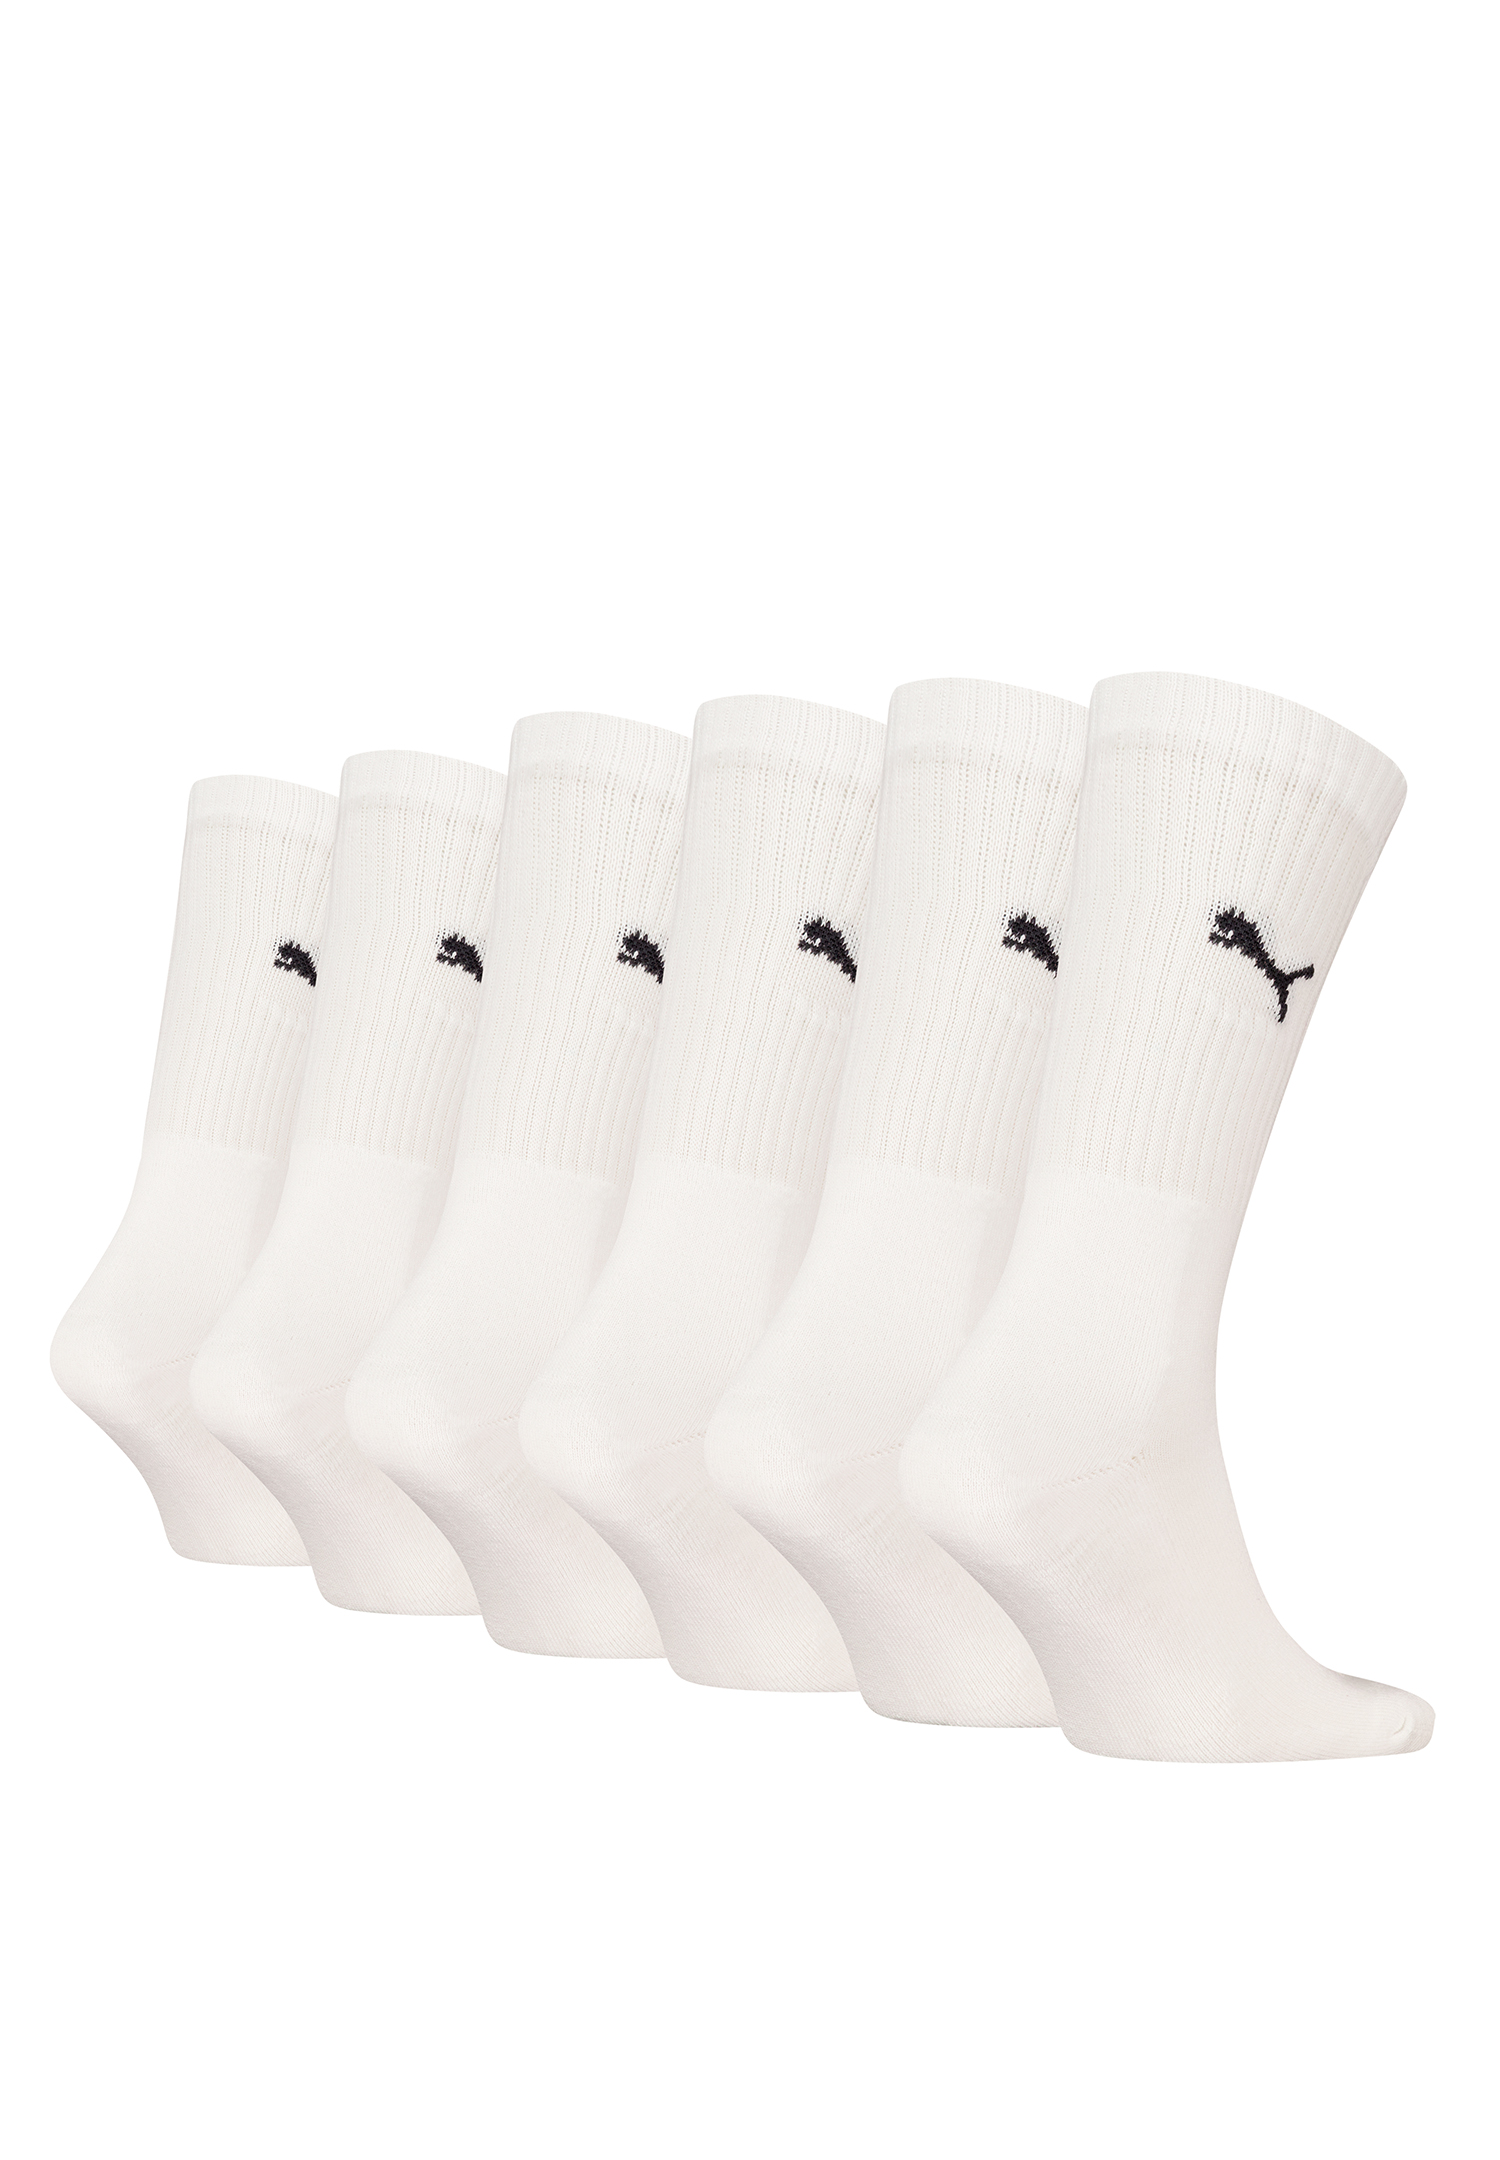 Puma Unisex Crew Tennissocken Sportsocken Socken für Damen Herren 6 Paar